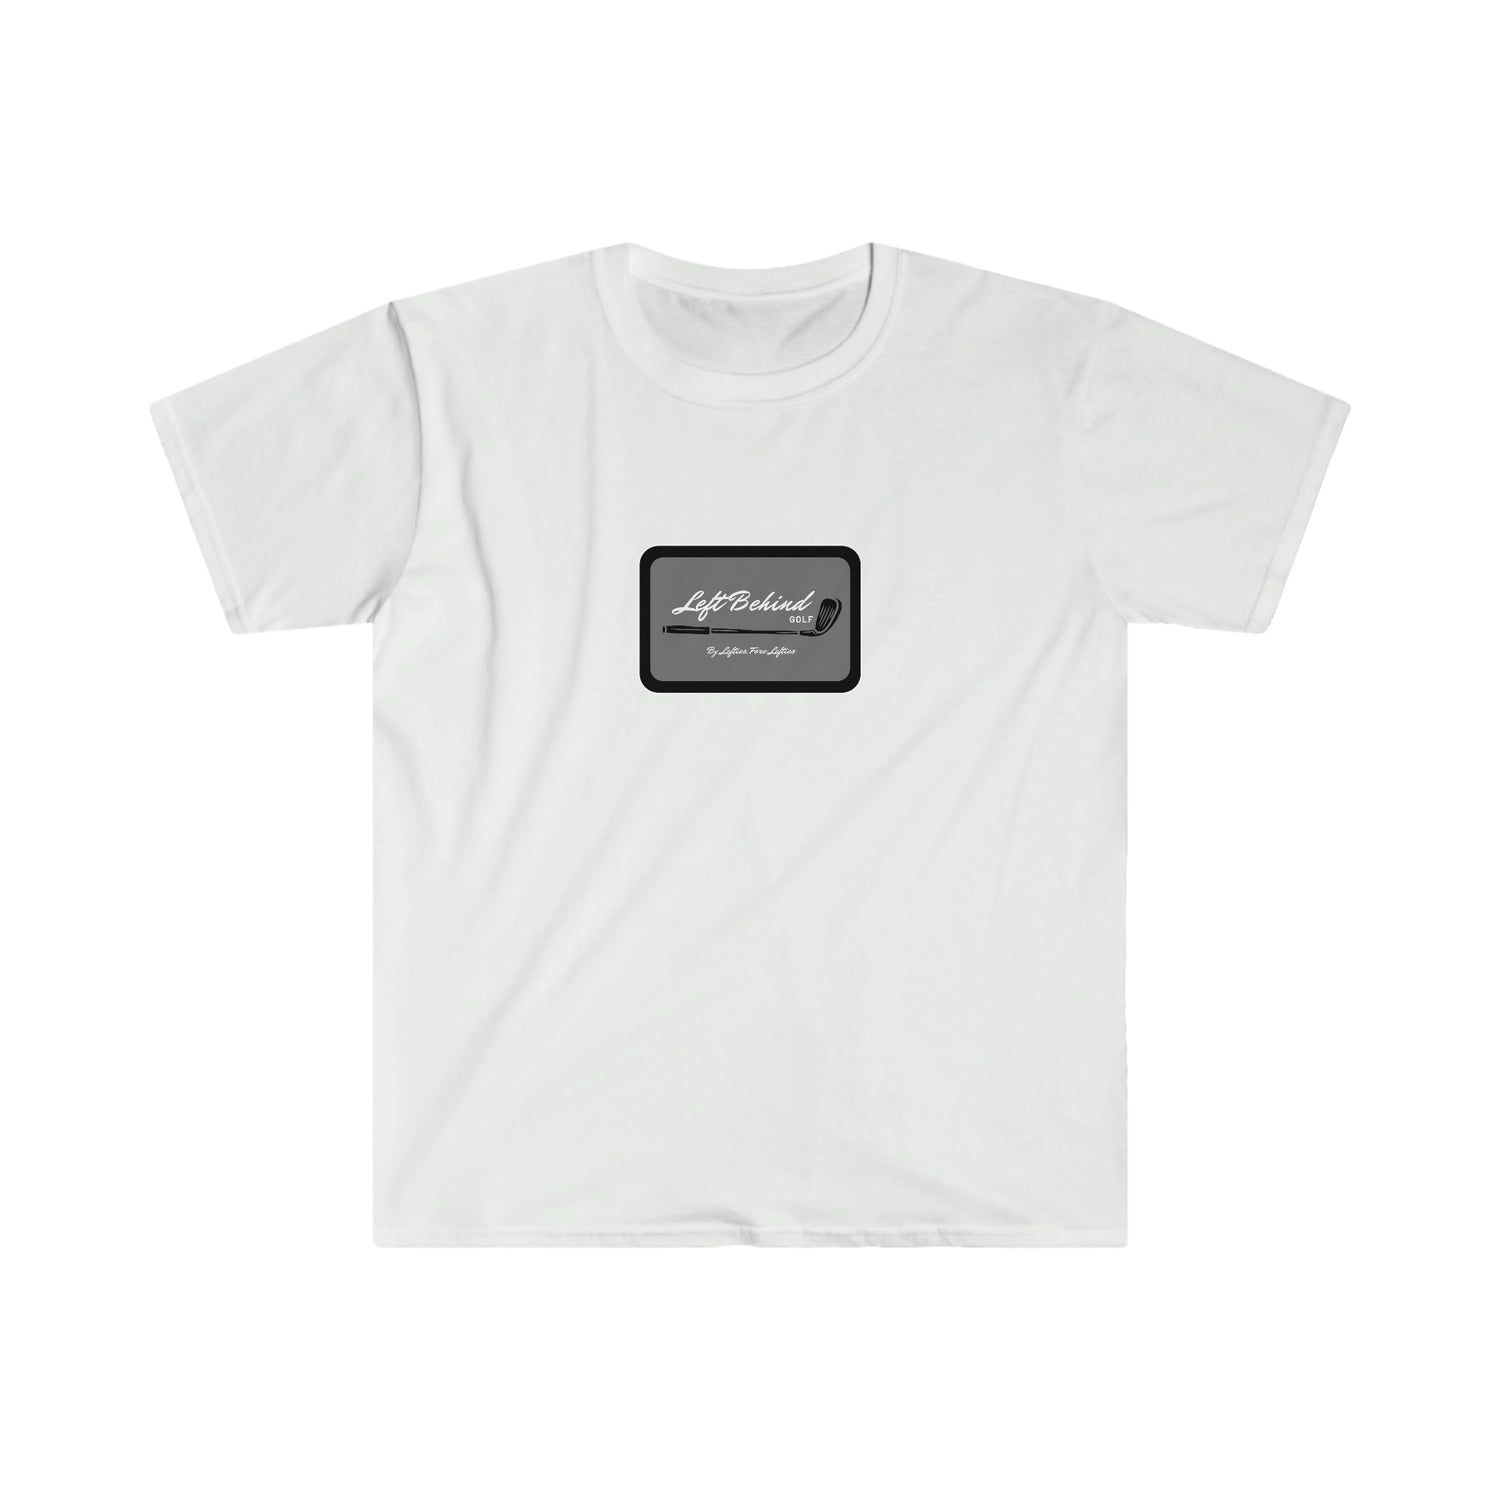 LBGC Retro Logo T-Shirt (Grey/Black/White)